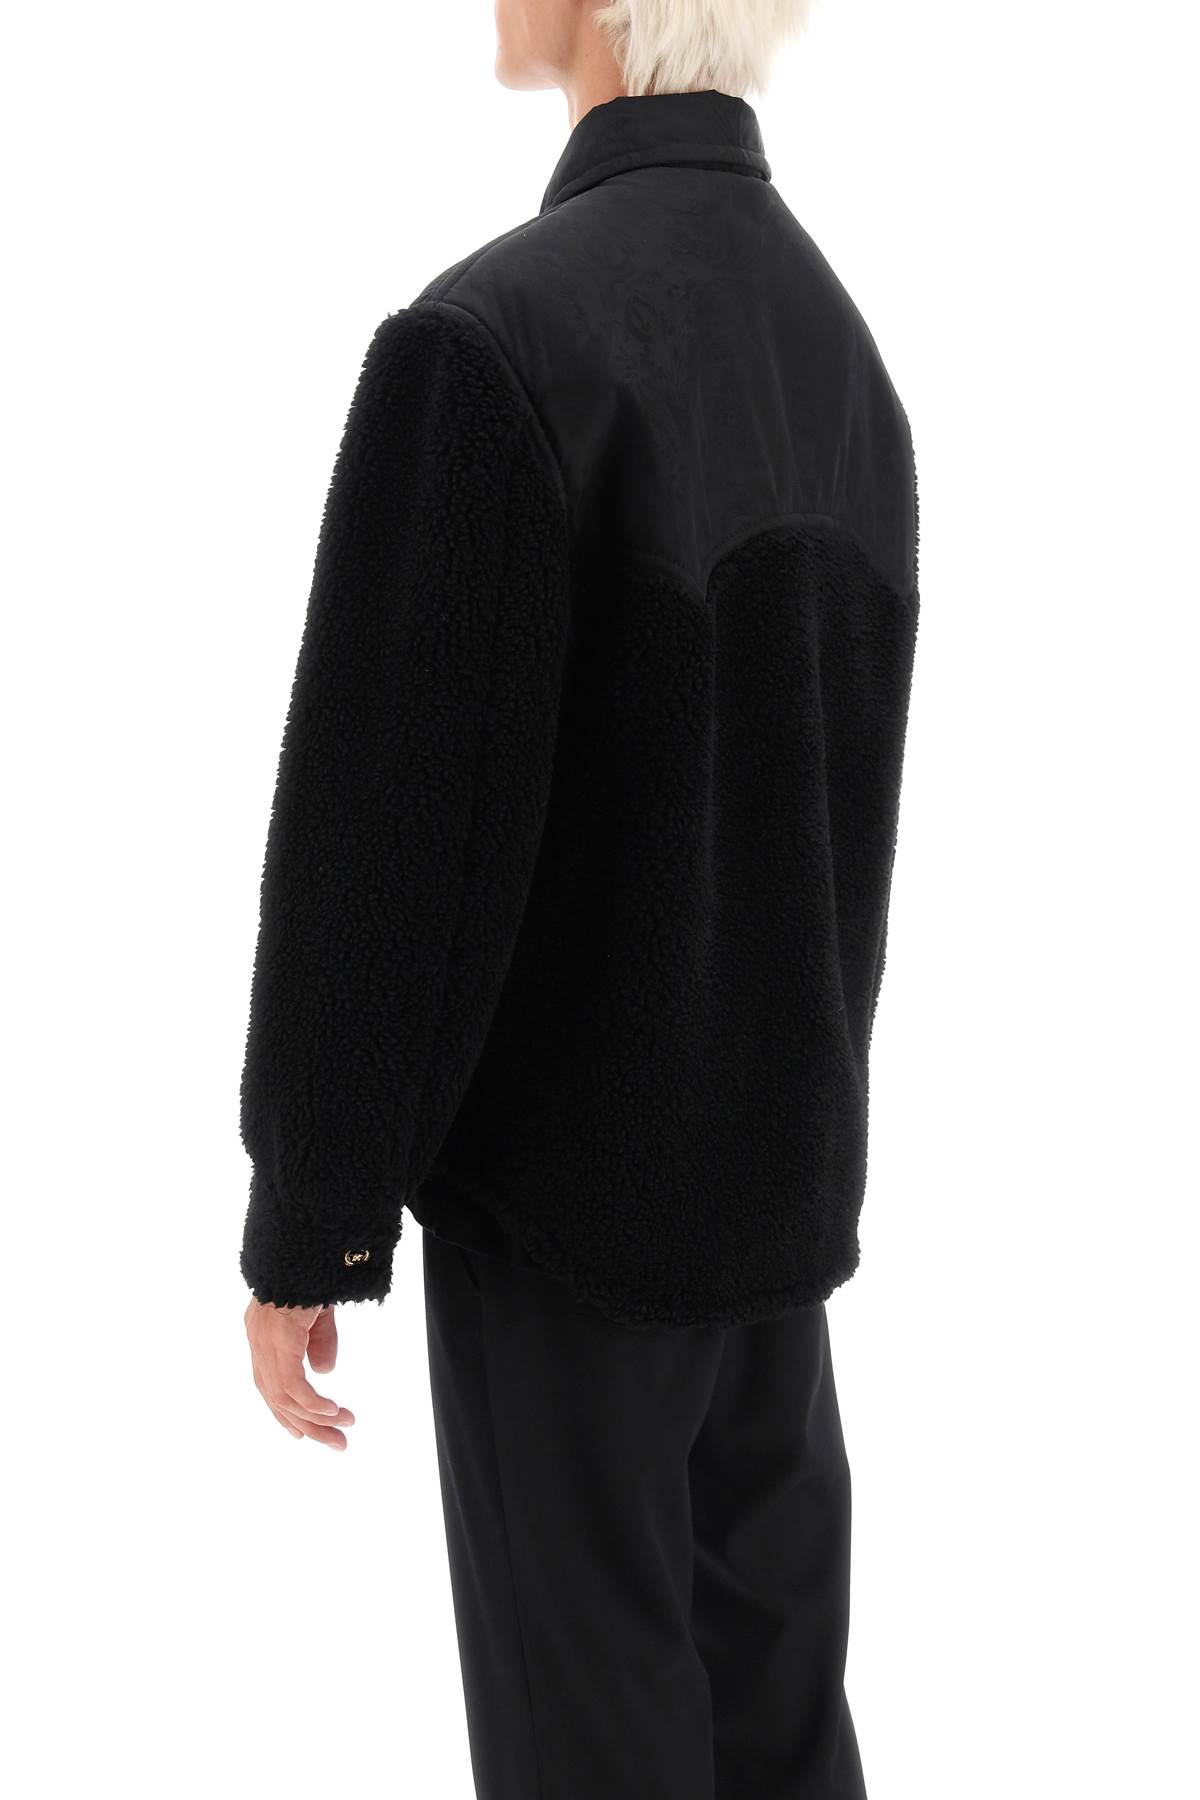 Shop Versace Barocco Silhouette Fleece Jacket In Black (black)